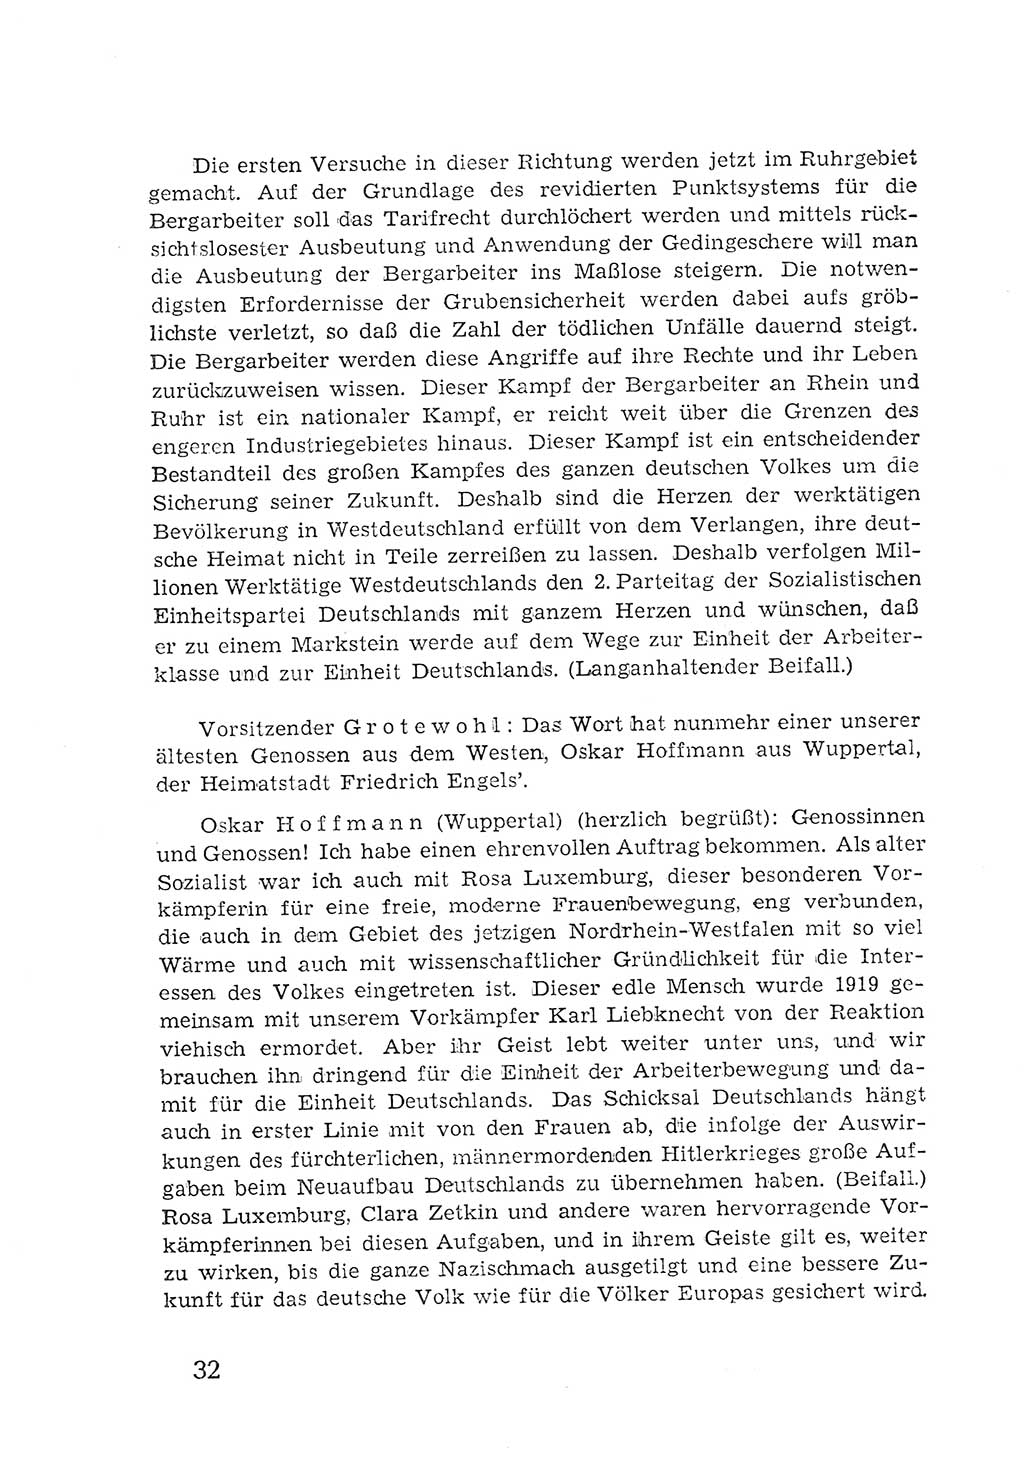 Protokoll der Verhandlungen des 2. Parteitages der Sozialistischen Einheitspartei Deutschlands (SED) [Sowjetische Besatzungszone (SBZ) Deutschlands] 1947, Seite 32 (Prot. Verh. 2. PT SED SBZ Dtl. 1947, S. 32)